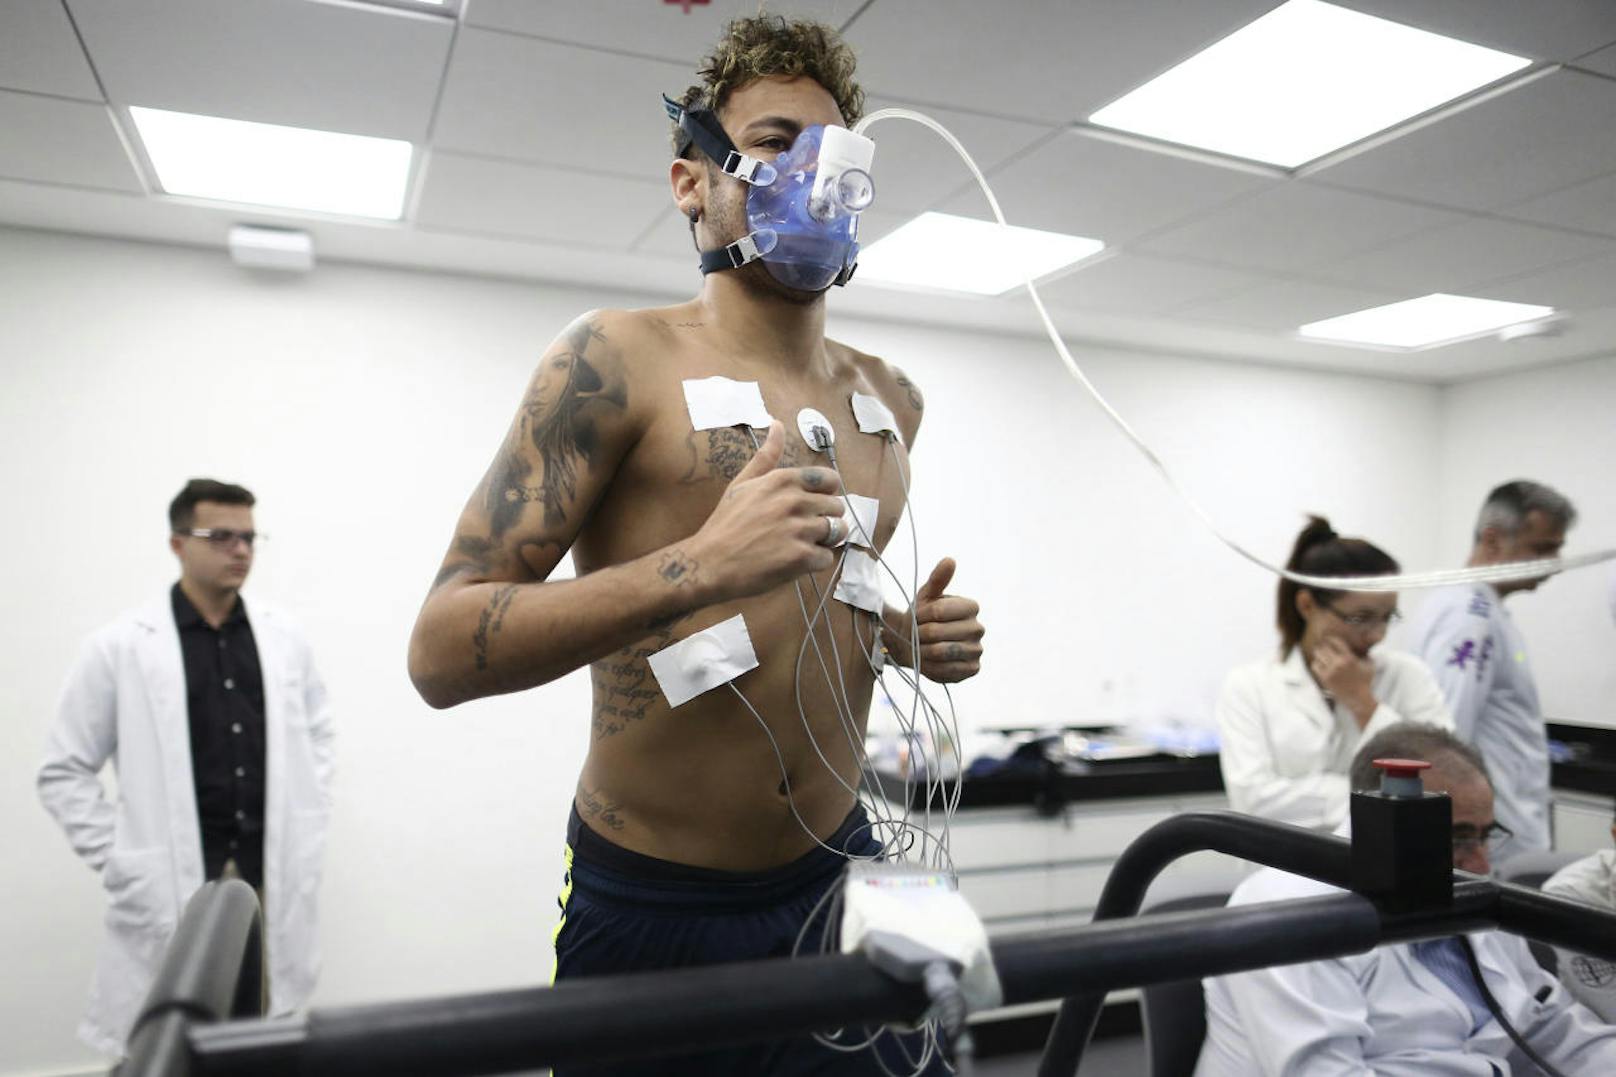 Brasilien-Superstar Neymar Jr konnte nach seiner Verletzung wieder ins Training einsteigen. Bei der WM-Endrunde ruhen die Hoffnungen seines Heimatlandes auf seinen Schultern.